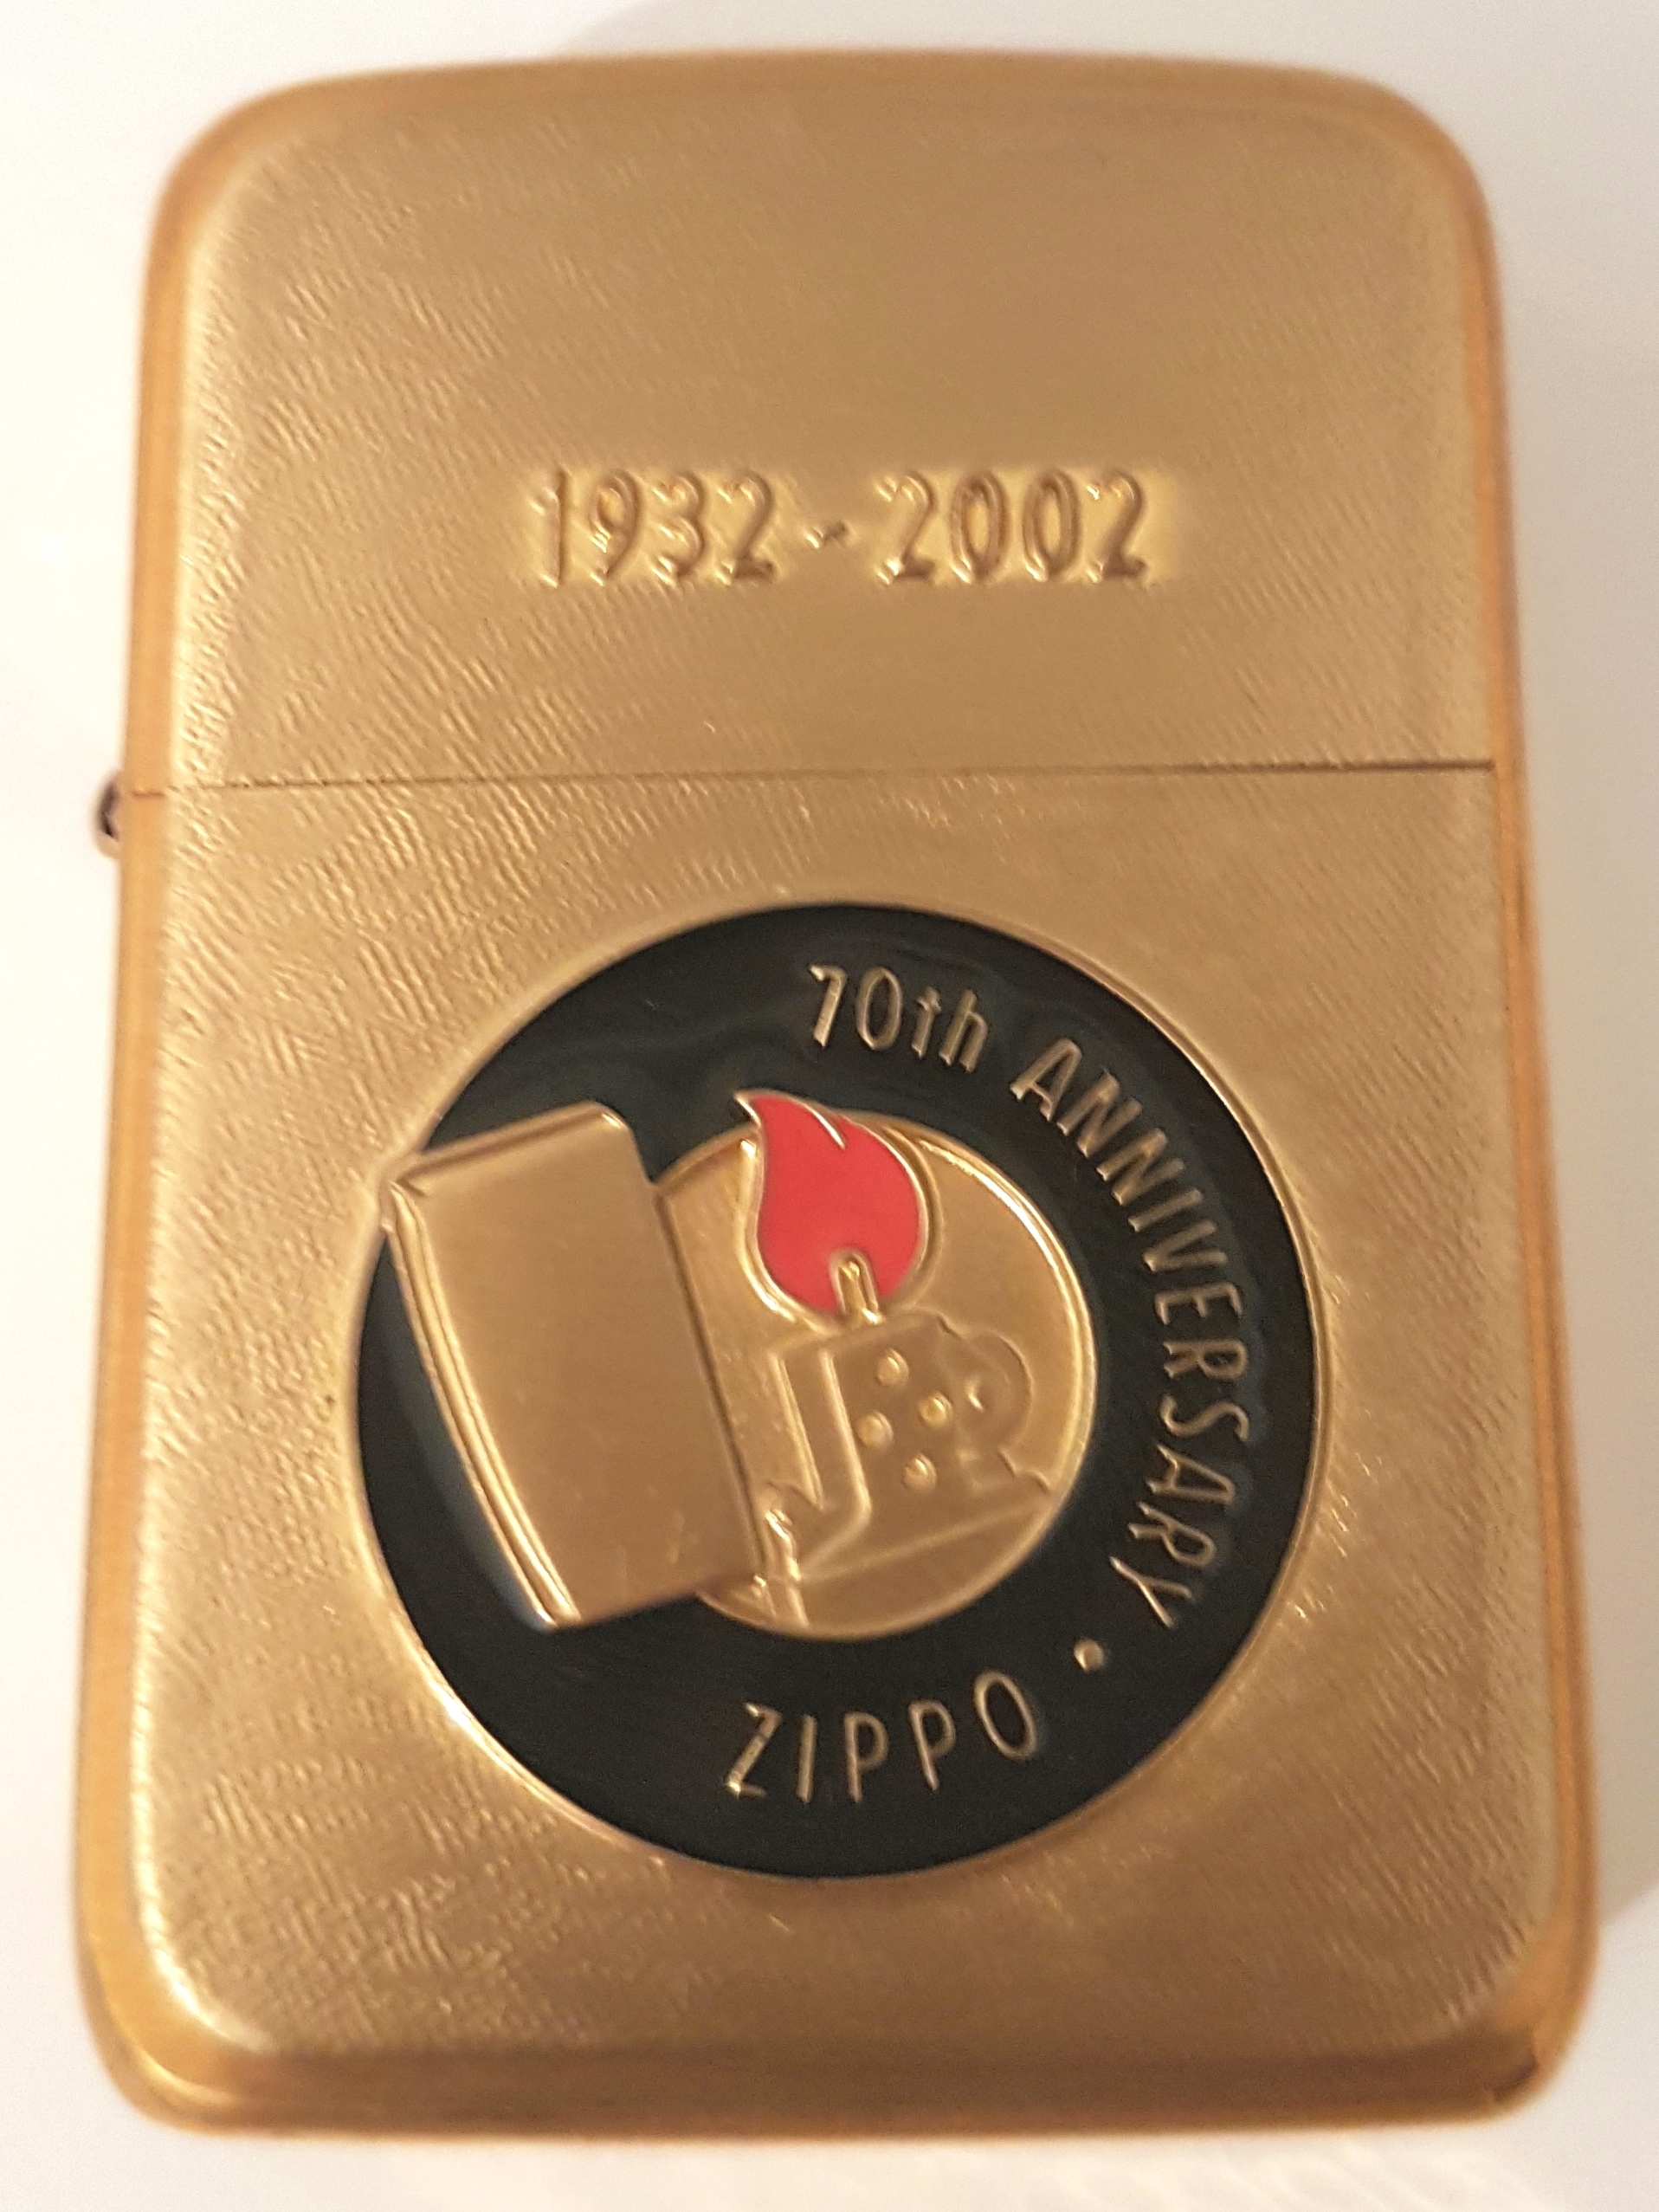 ZIPPO 70th ANNIVERSARY 1932-2002 - library.iainponorogo.ac.id